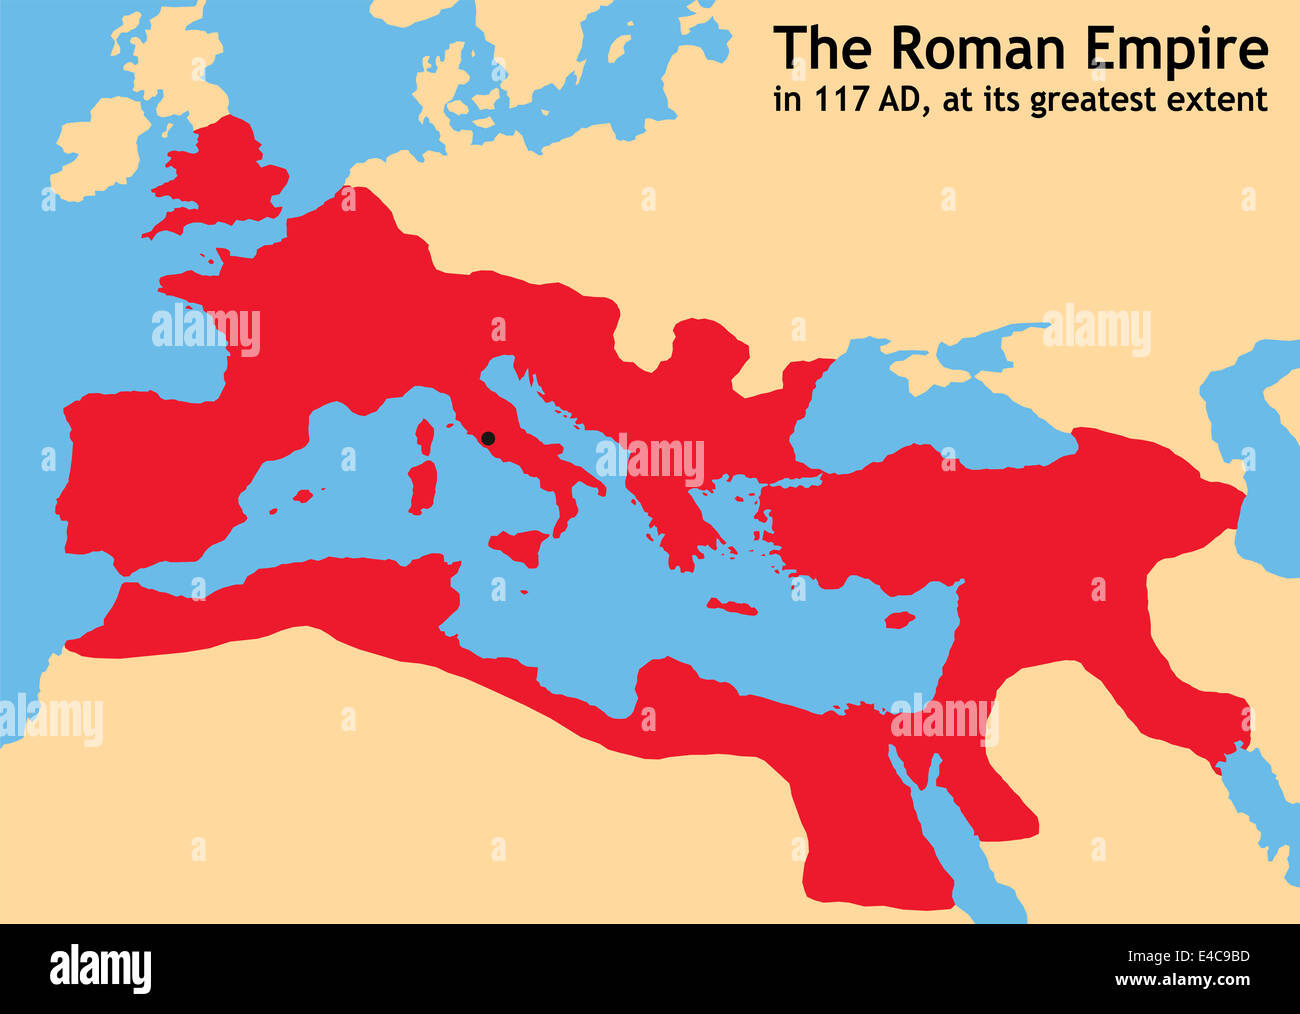 Limpero Romano Nellantica Europa Alla Sua Massima Estensione Nel 117 Dc Al Tempo Di Traiano 7728